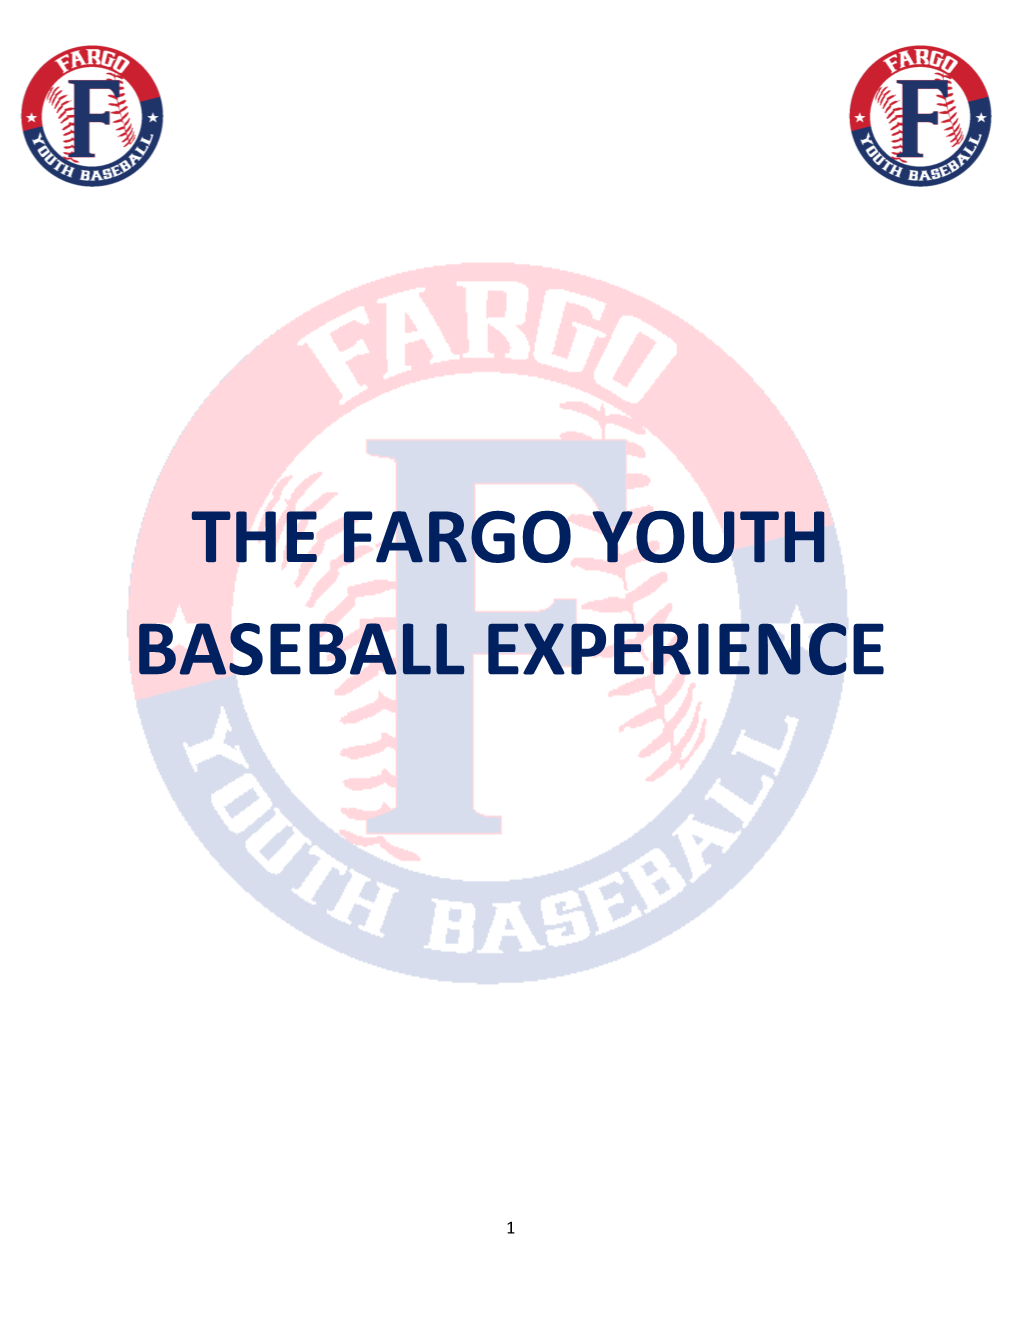 The Fargo Youth Baseball Experience